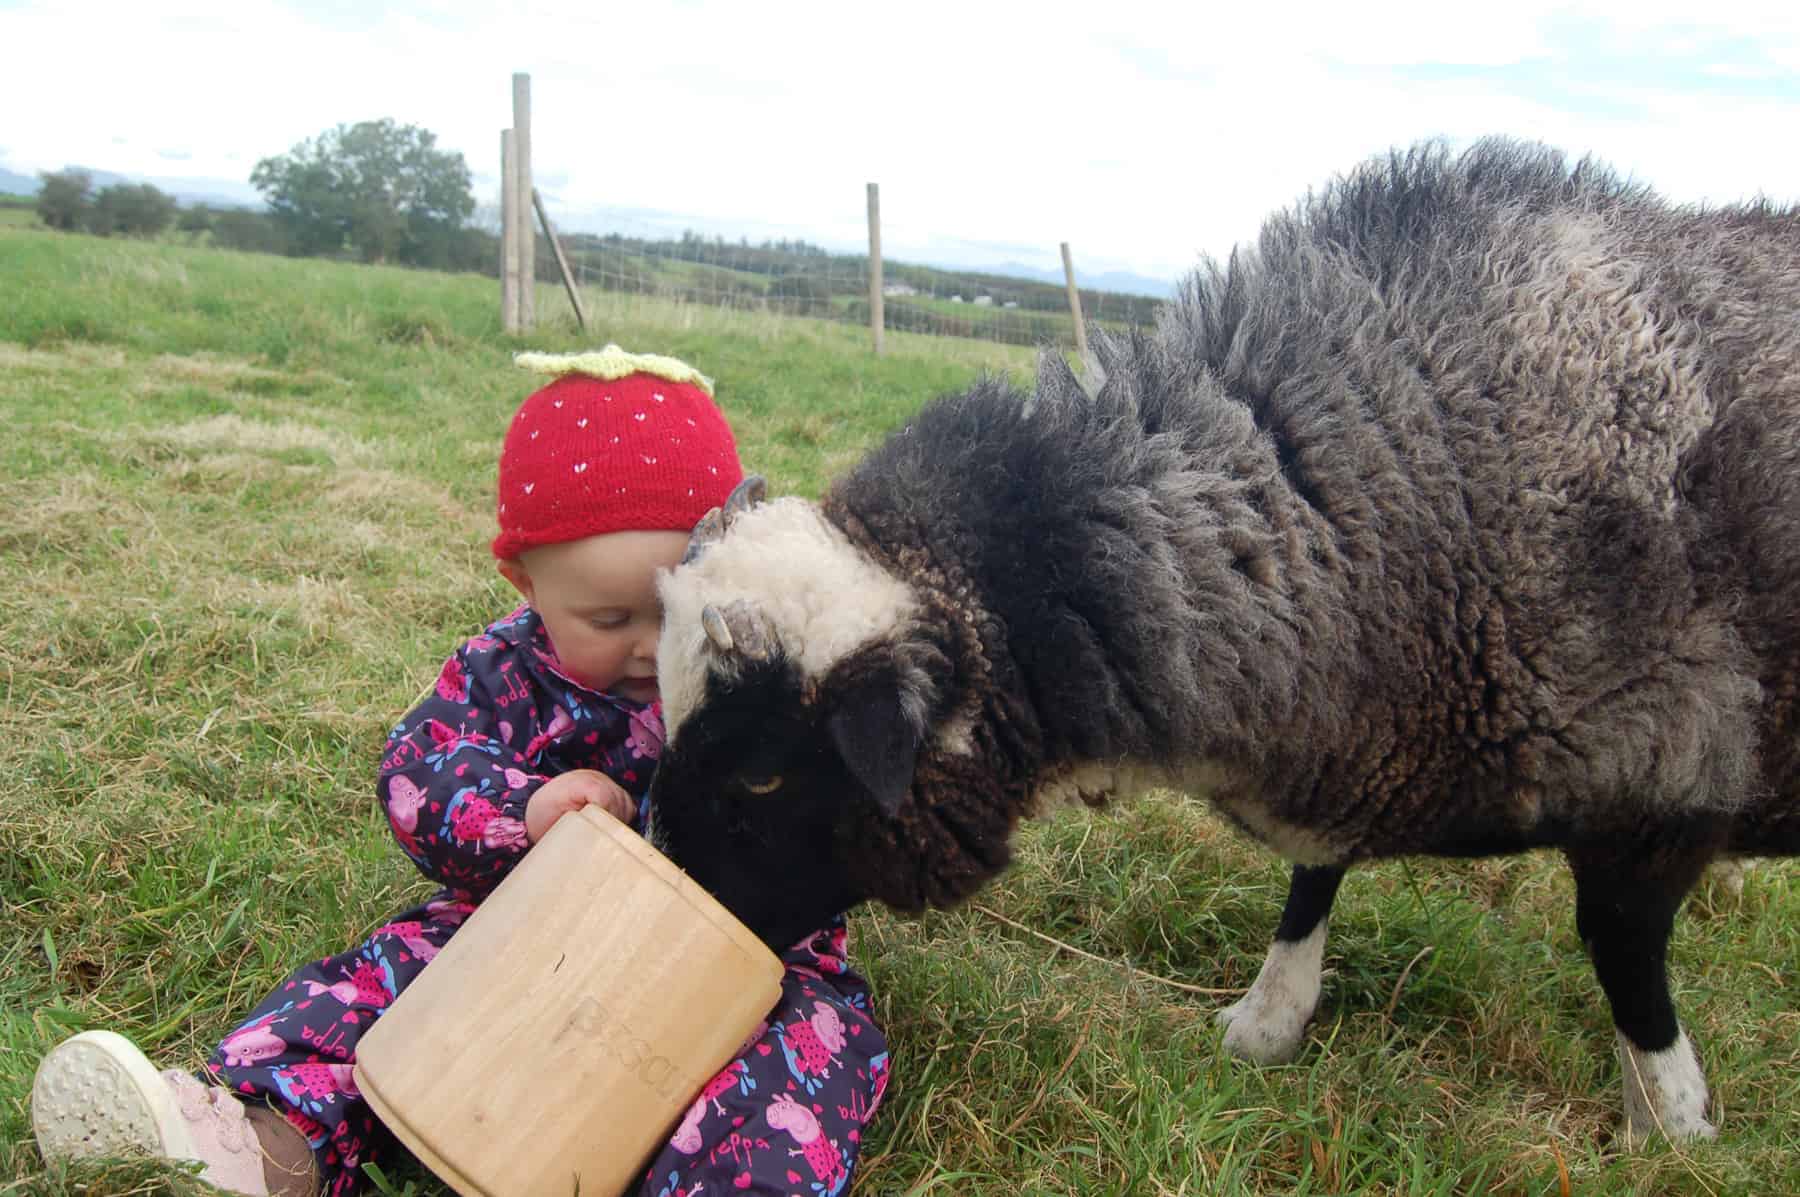 Holly pet lamb sheep jacob cross shetland spotted black grey white wales gwynedd kids farm life